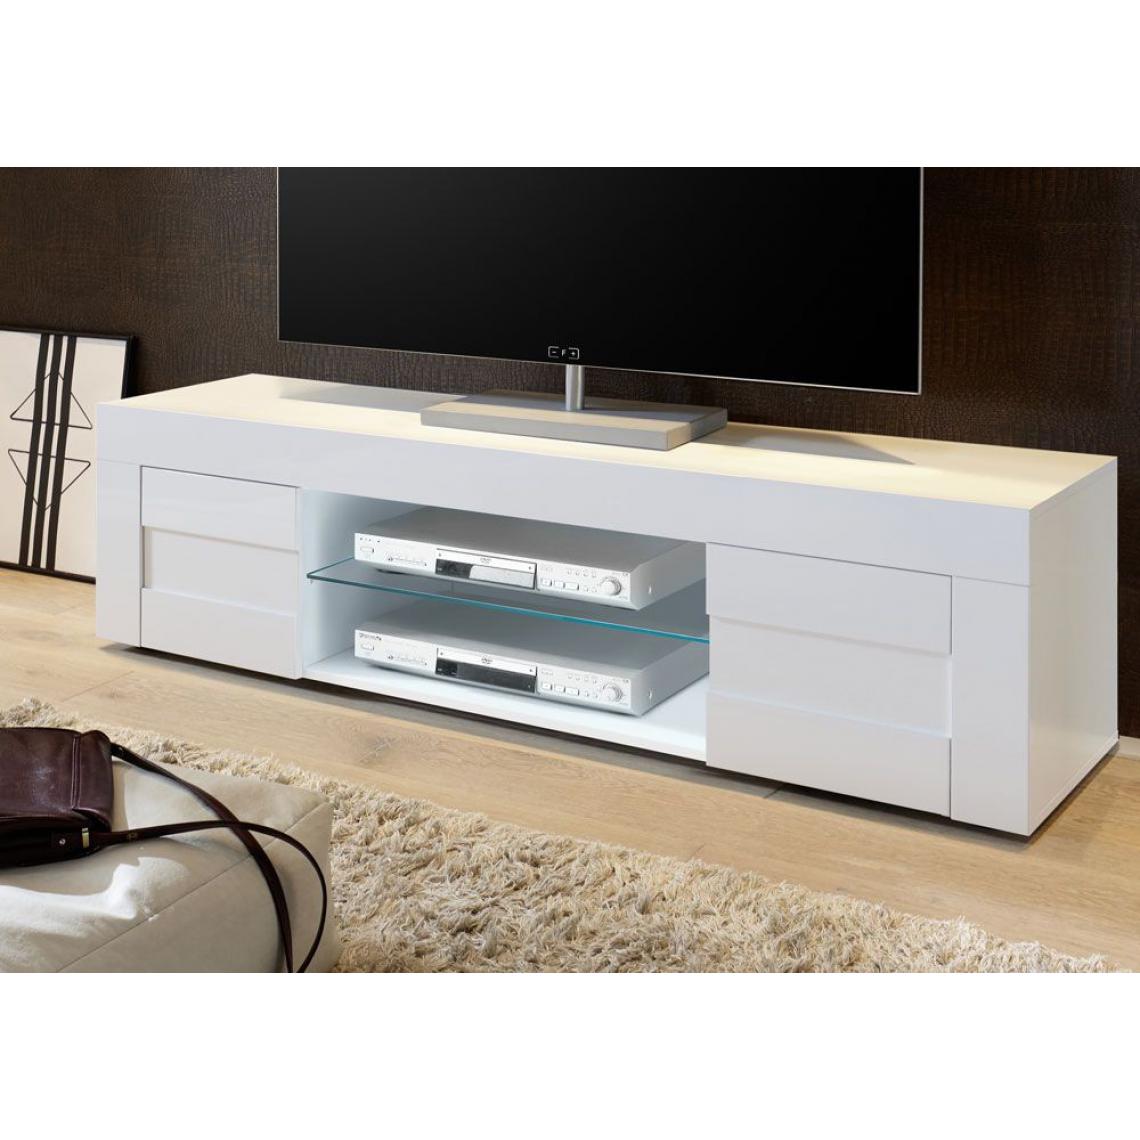 Alter - Meuble de salon meuble TV moderne, Buffet bas avec 2 portes, Made in Italy, 181x42xh44 cm, couleur blanc brillant - Meubles TV, Hi-Fi